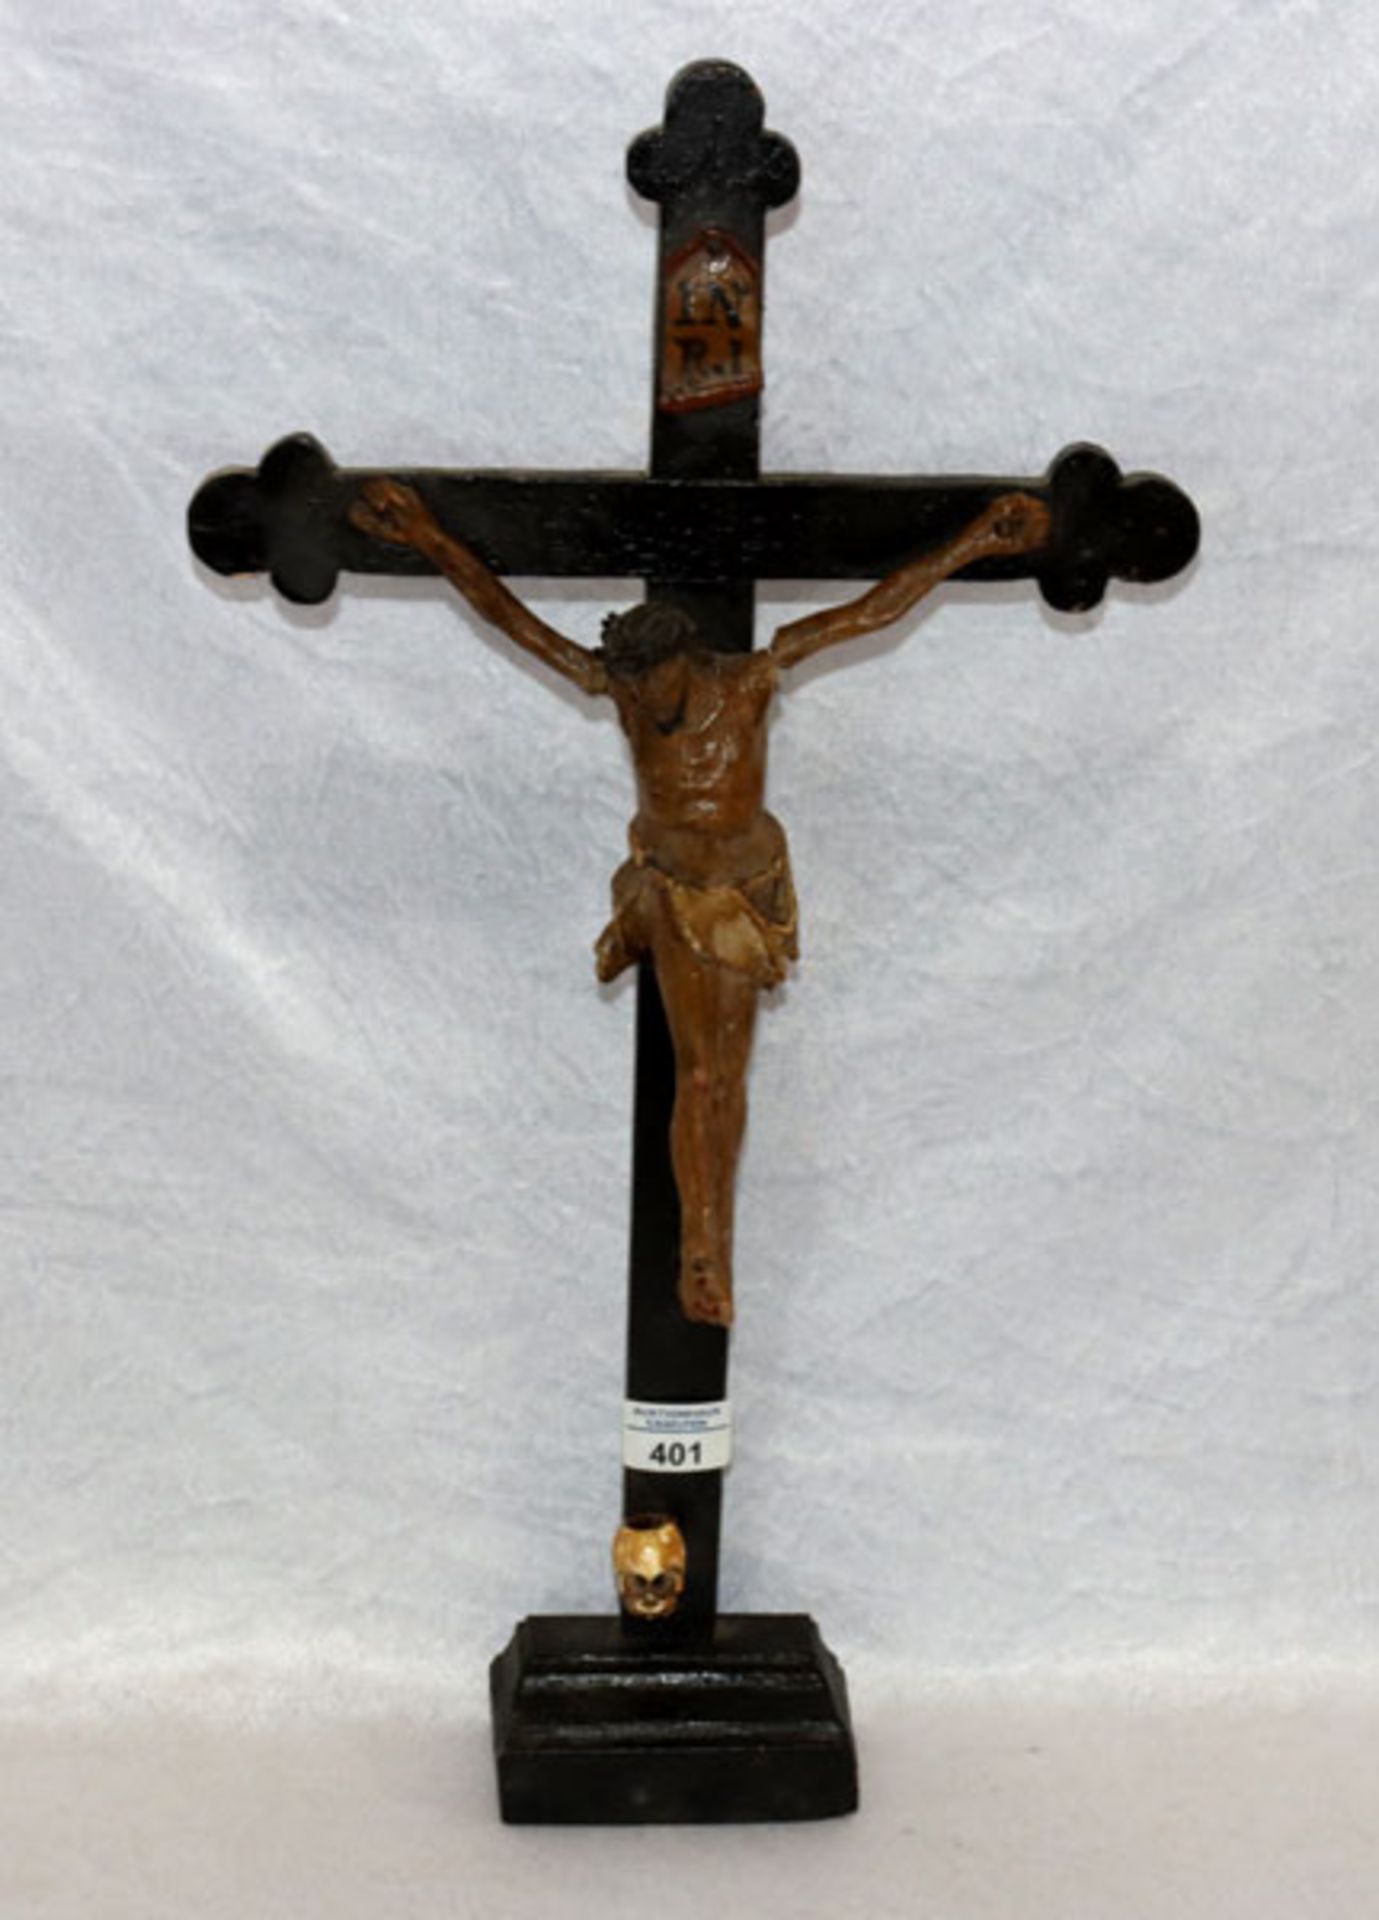 Holz Standkreuz mit Korpus Christi und Totenkopf, 19. Jahrhundert, H 56 cm, B 30 cm, Altersspuren